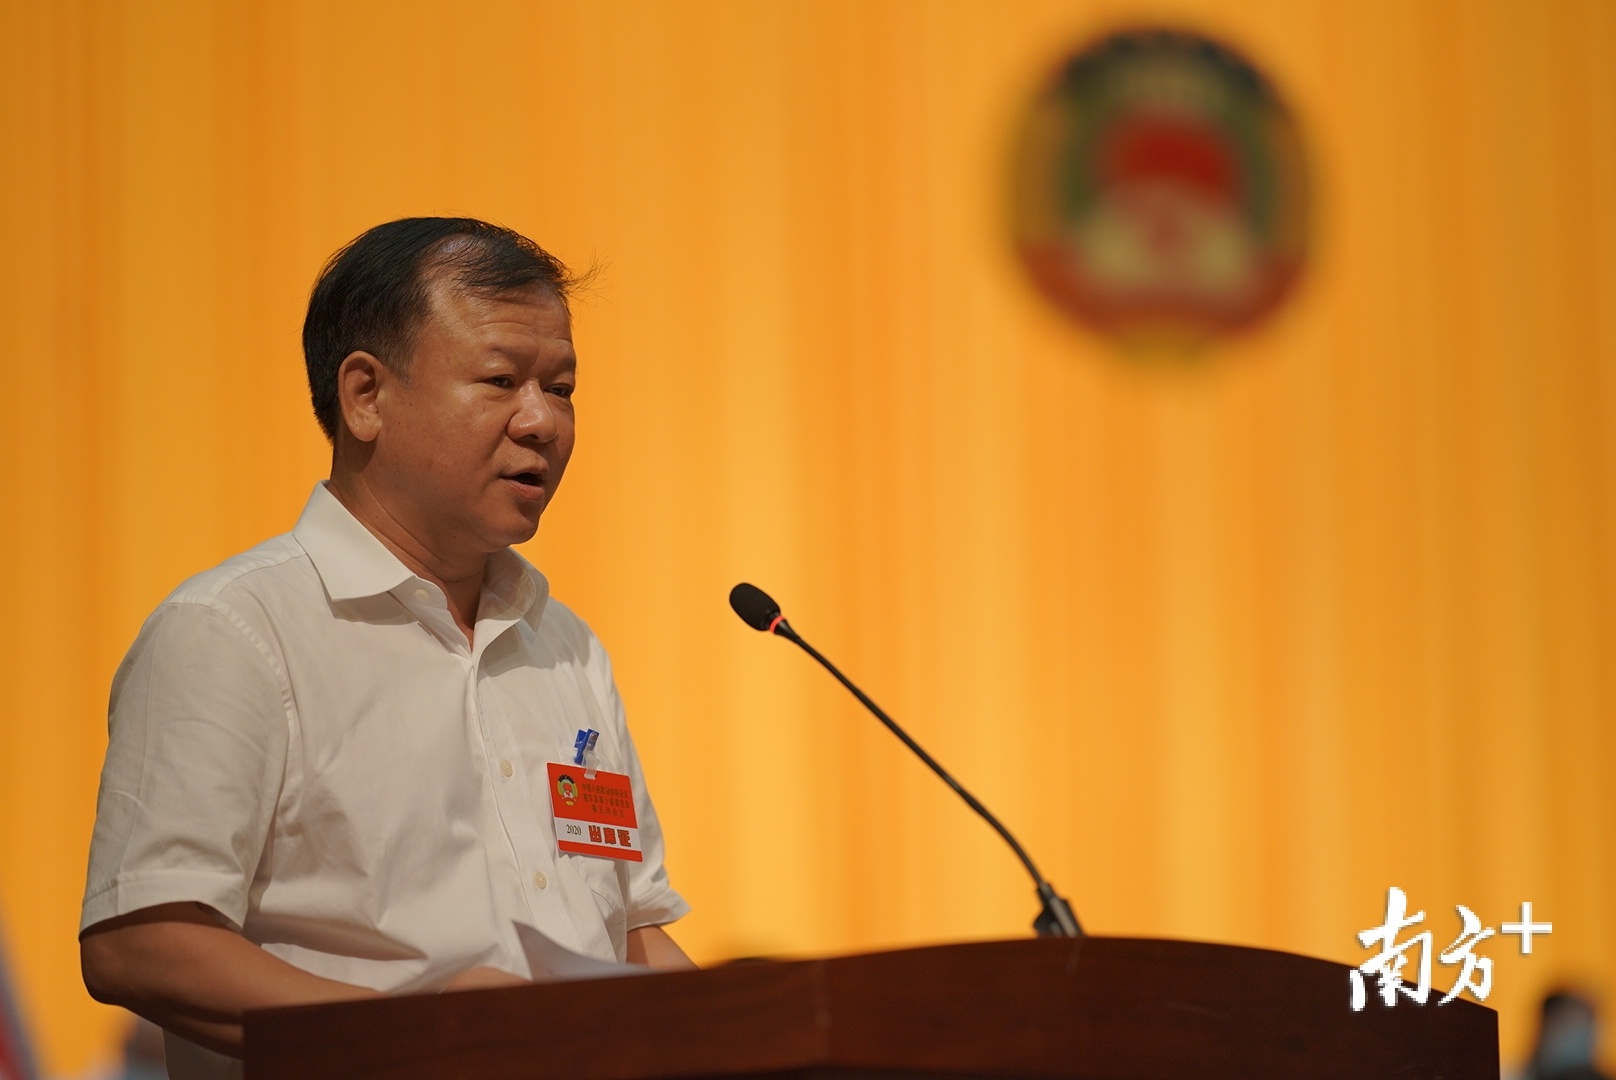 惠东县政协主席郭王生向大会作政协第十届惠东县委员会工作报告。